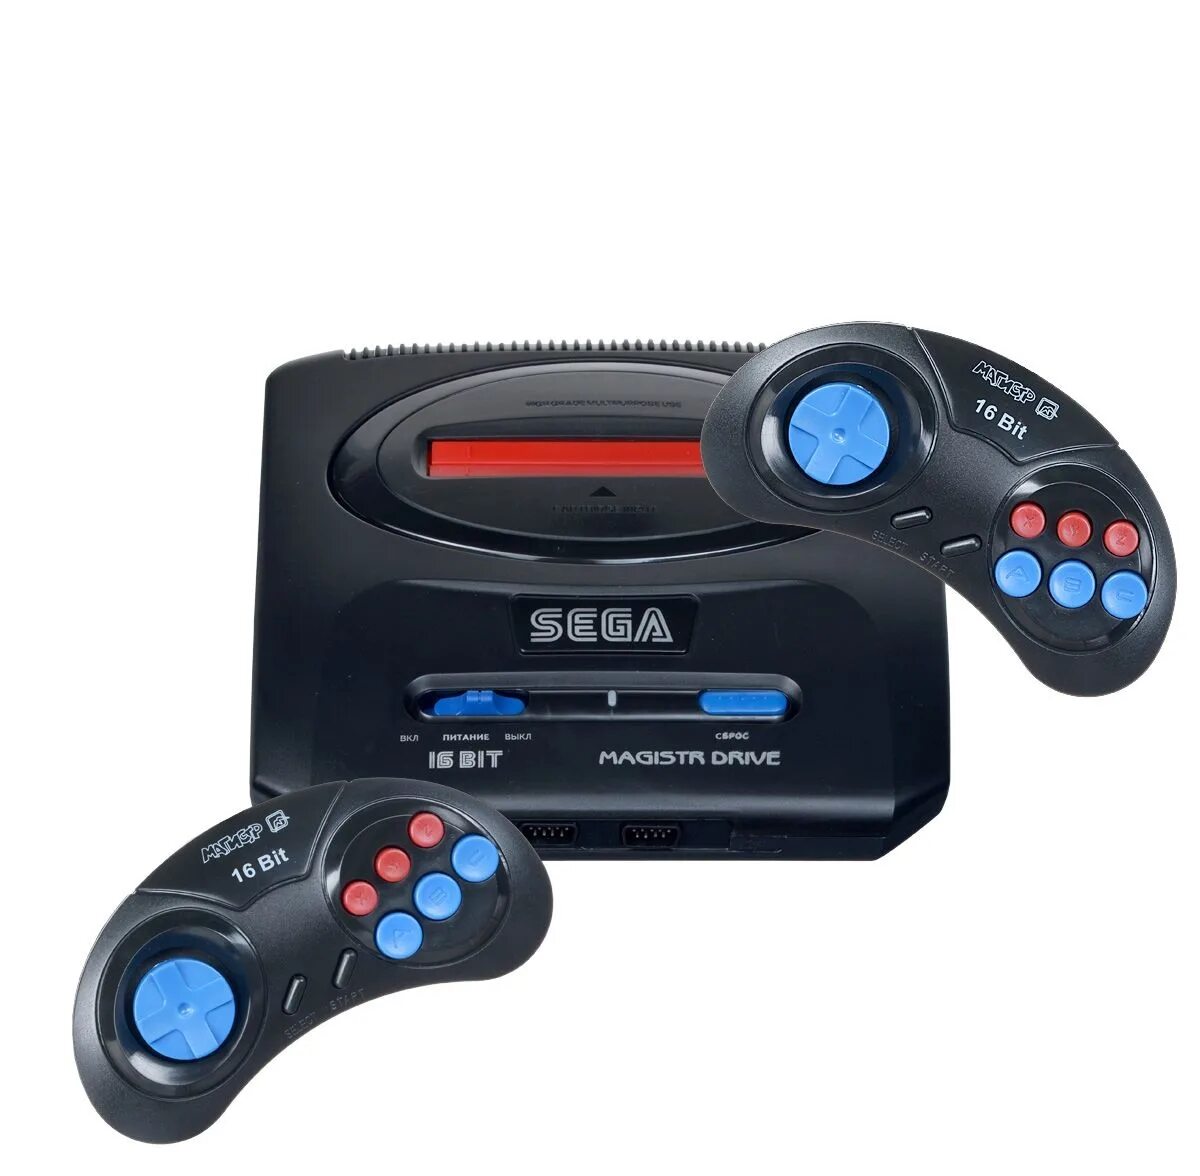 Приставка купить интернет магазин. Приставка Sega Mega Drive Magistr 2. Игровая приставка Sega Magistr Drive 2. Приставка сега Магистр драйв 2. Sega Magistr Drive 5.